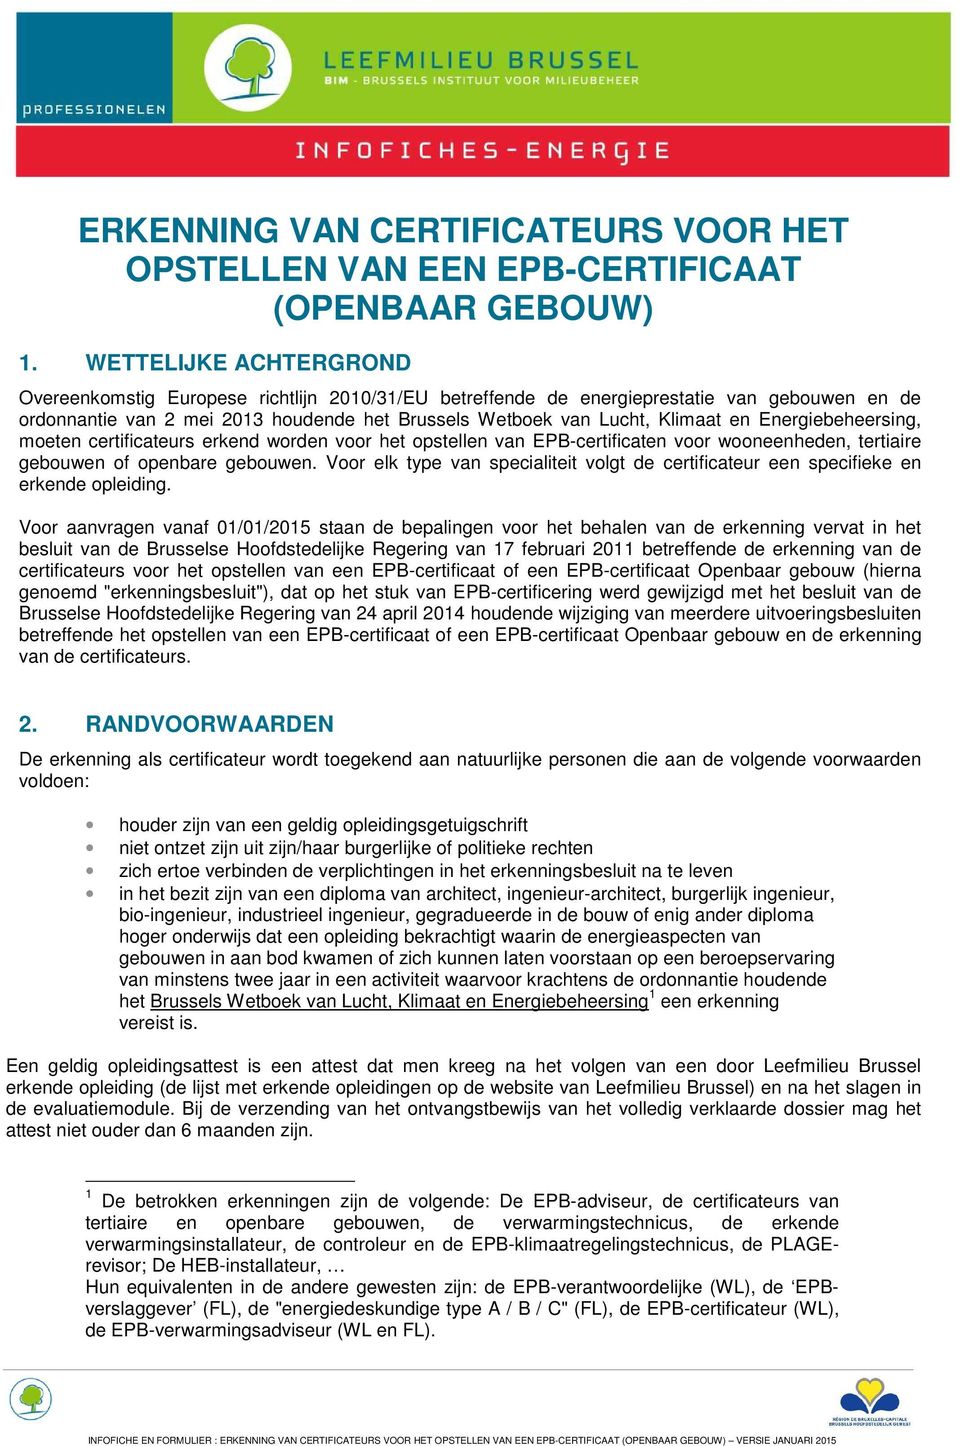 Energiebeheersing, moeten certificateurs erkend worden voor het opstellen van EPB-certificaten voor wooneenheden, tertiaire gebouwen of openbare gebouwen.